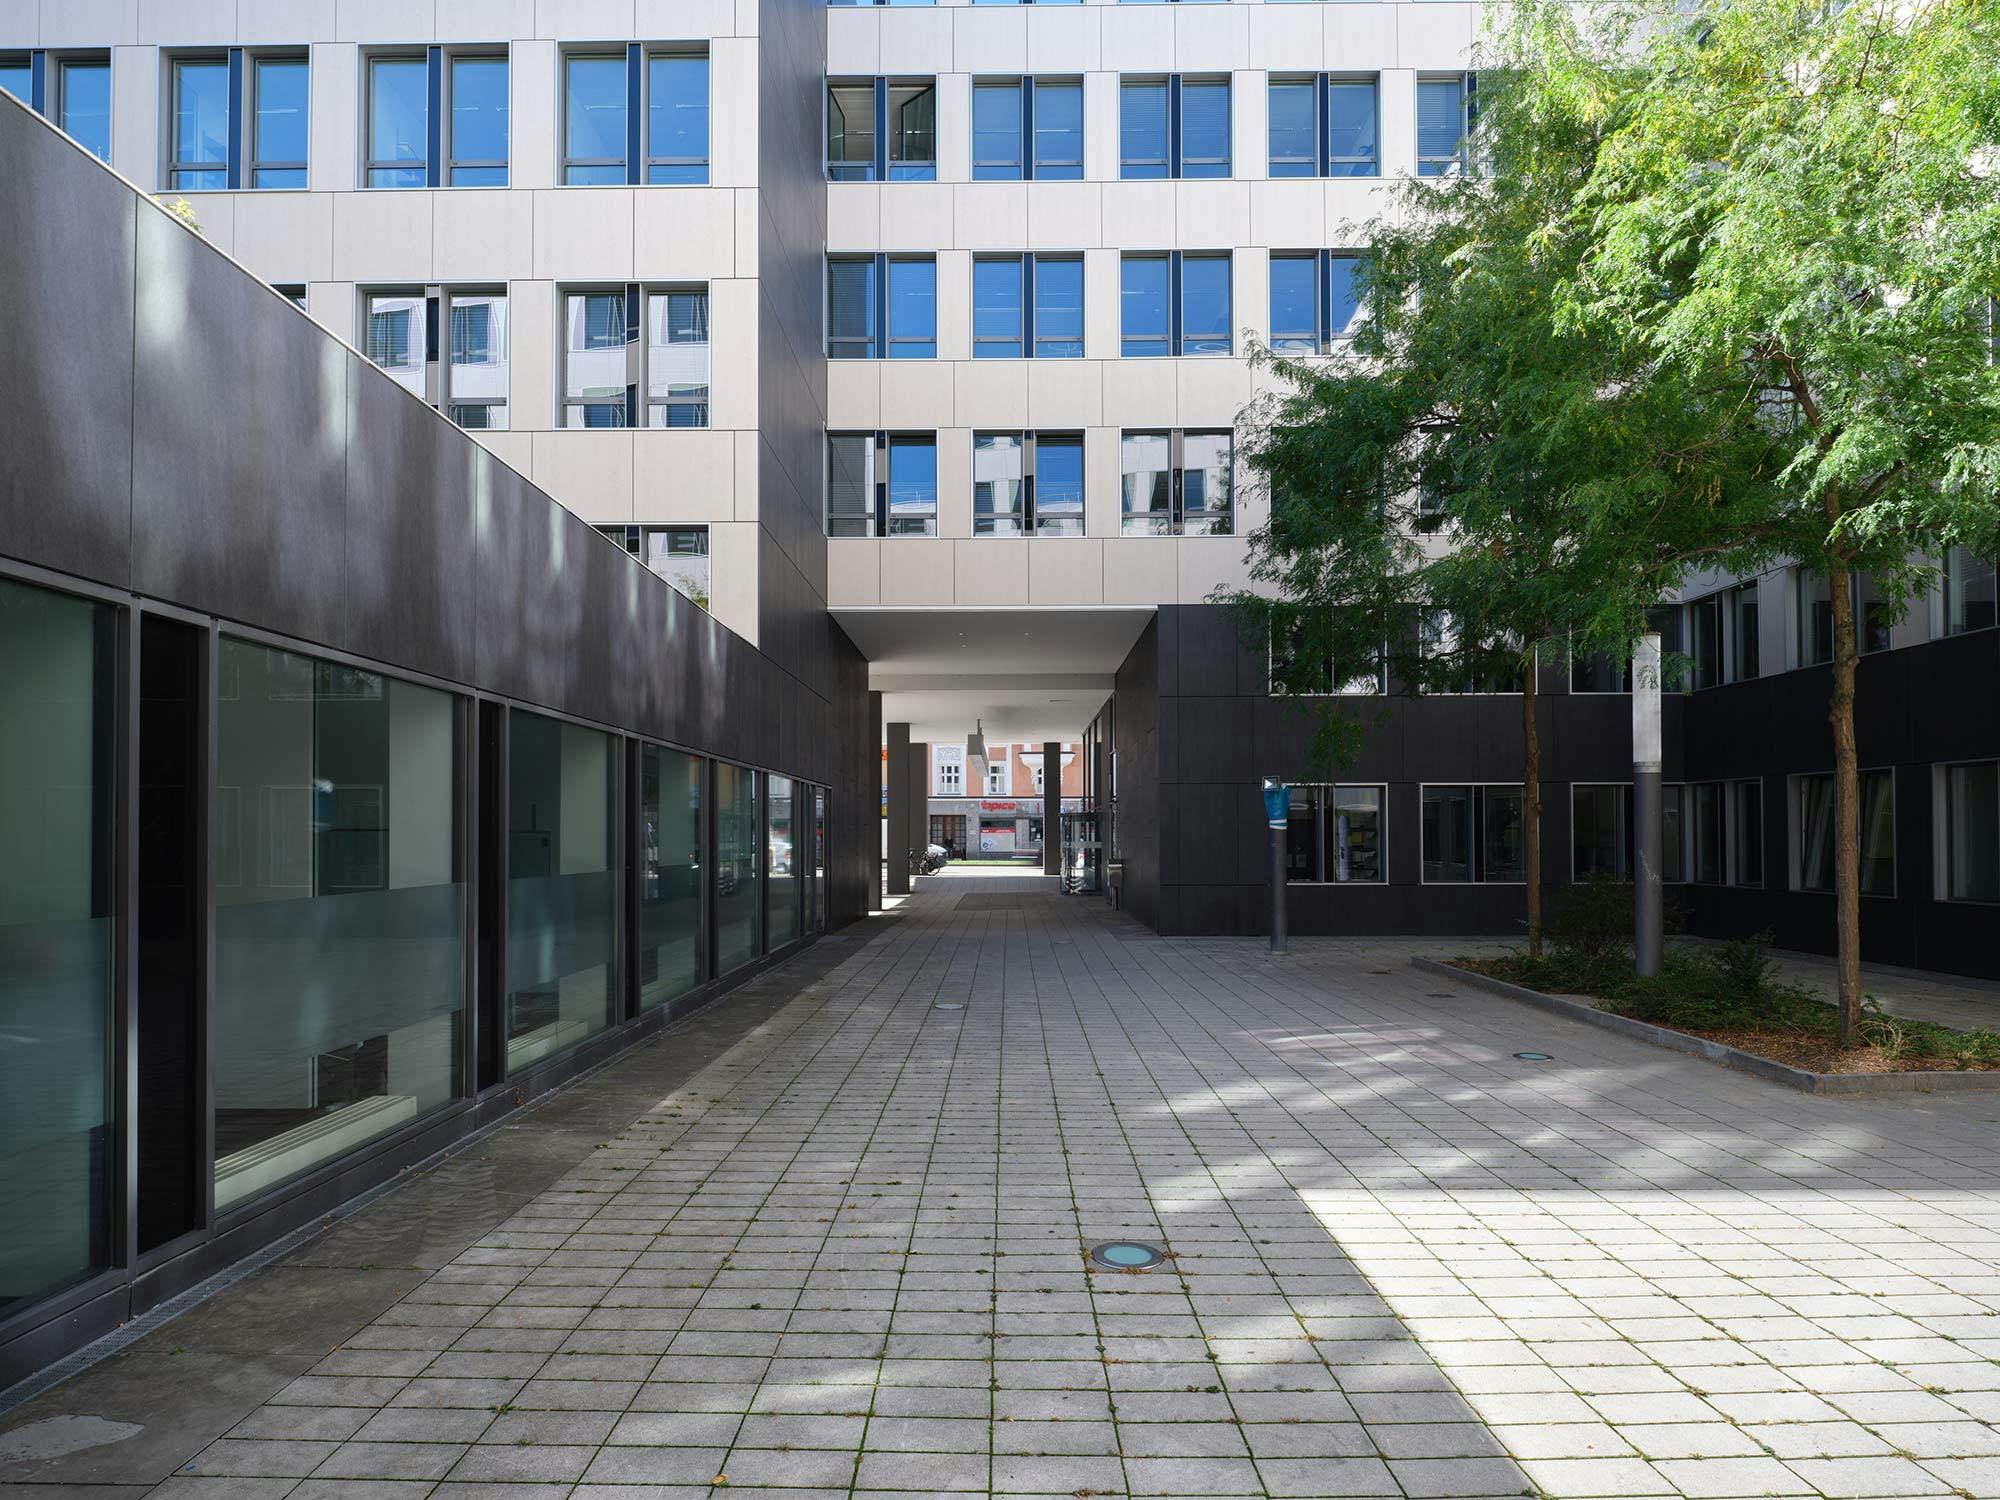 Image 49 of Fachada office building Munich.jpg?auto=format%2Ccompress&ixlib=php 3.3 in A complex Dekton facade for The Warner Building in Michigan - Cosentino